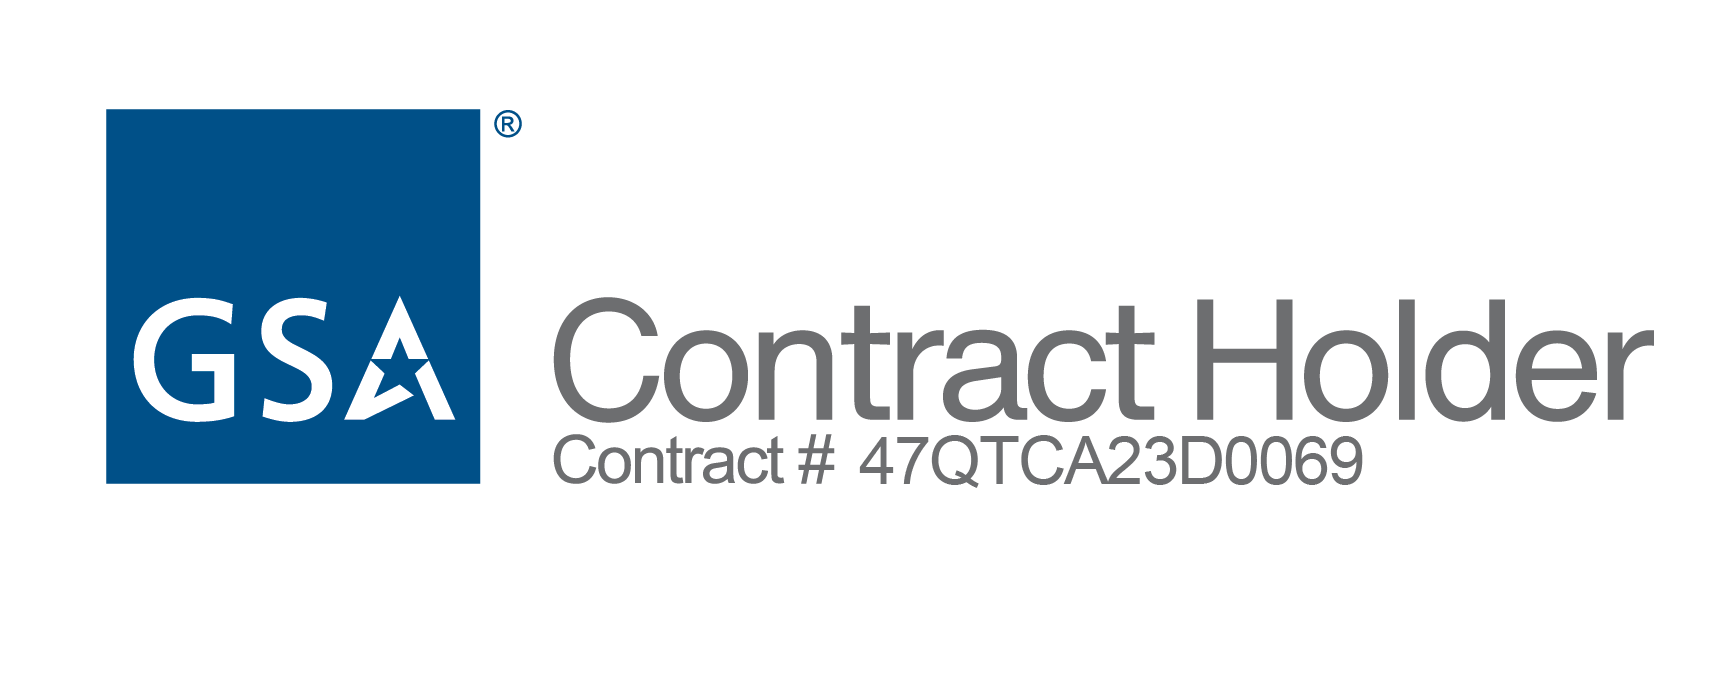 GSA Contract Holder. Contract #47QTCA23D0069